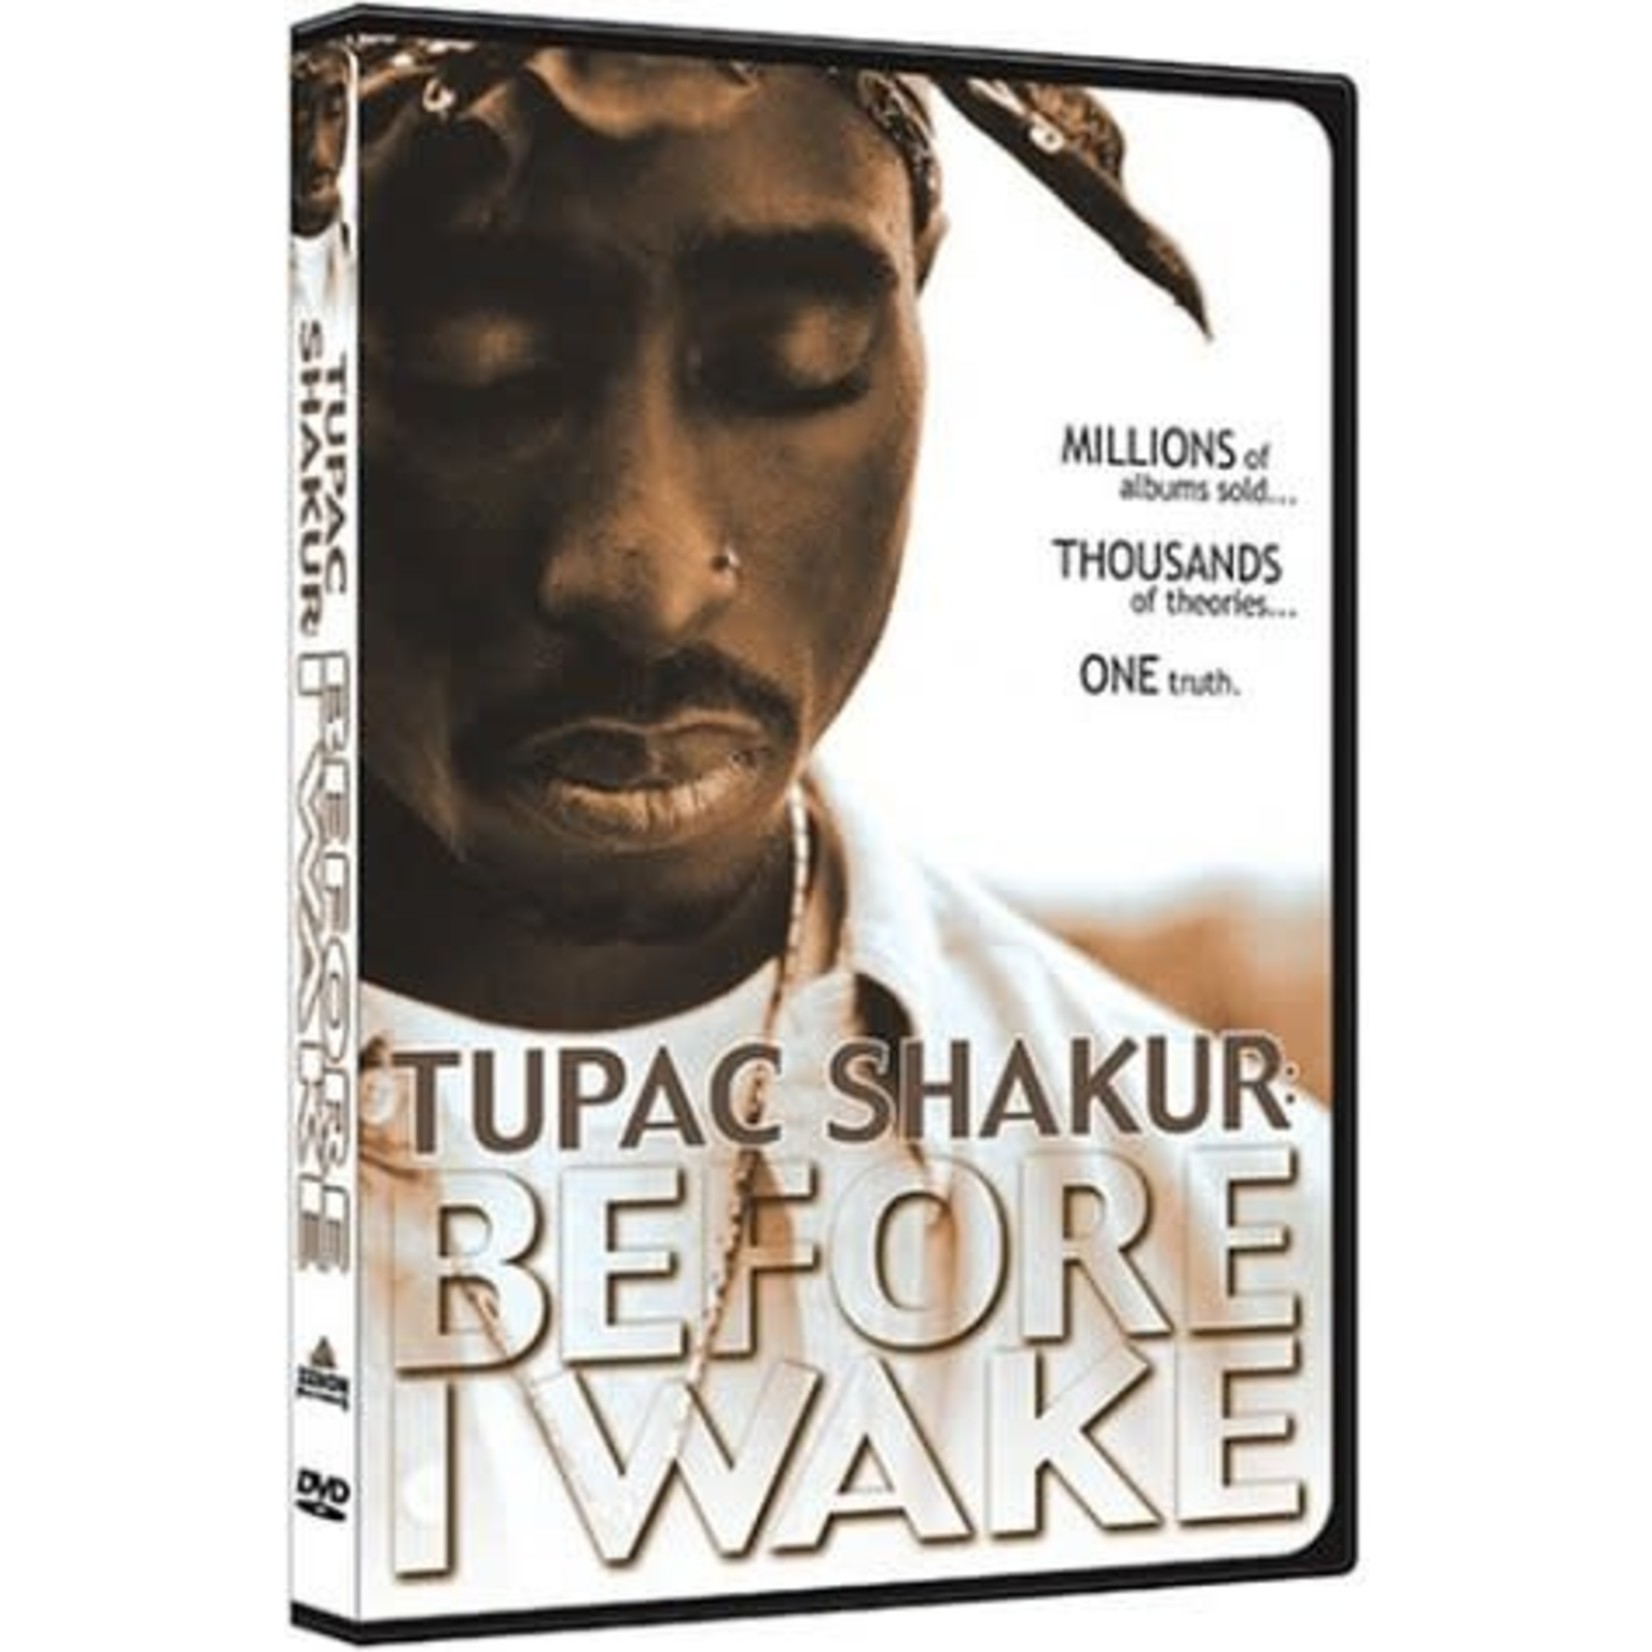 2Pac - Before I Wake [USED DVD]